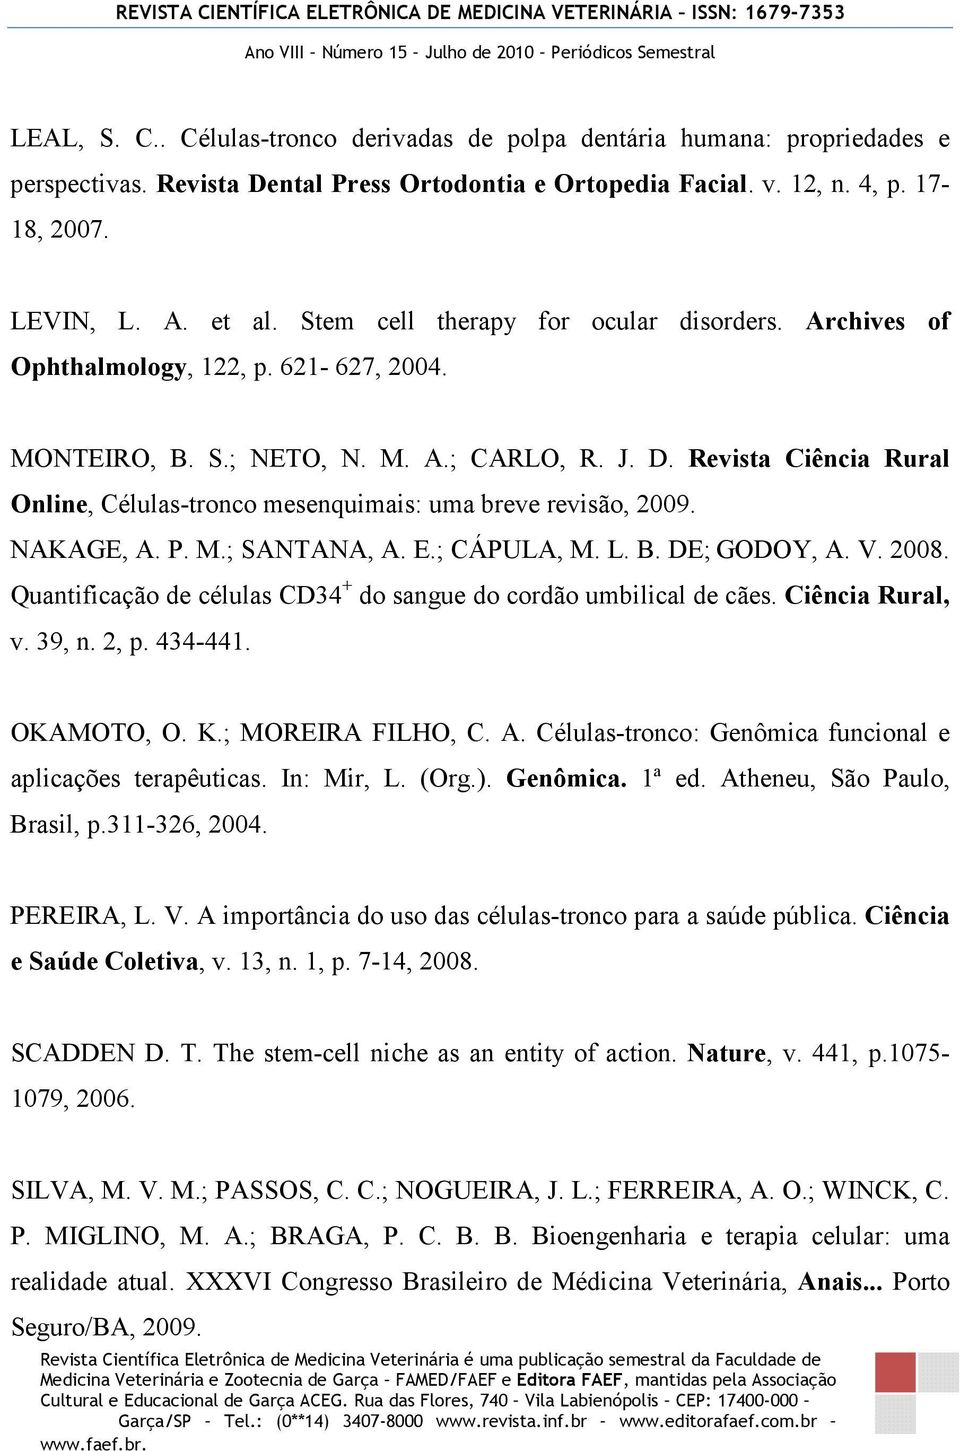 Revista Ciência Rural Online, Células-tronco mesenquimais: uma breve revisão, 2009. NAKAGE, A. P. M.; SANTANA, A. E.; CÁPULA, M. L. B. DE; GODOY, A. V. 2008.